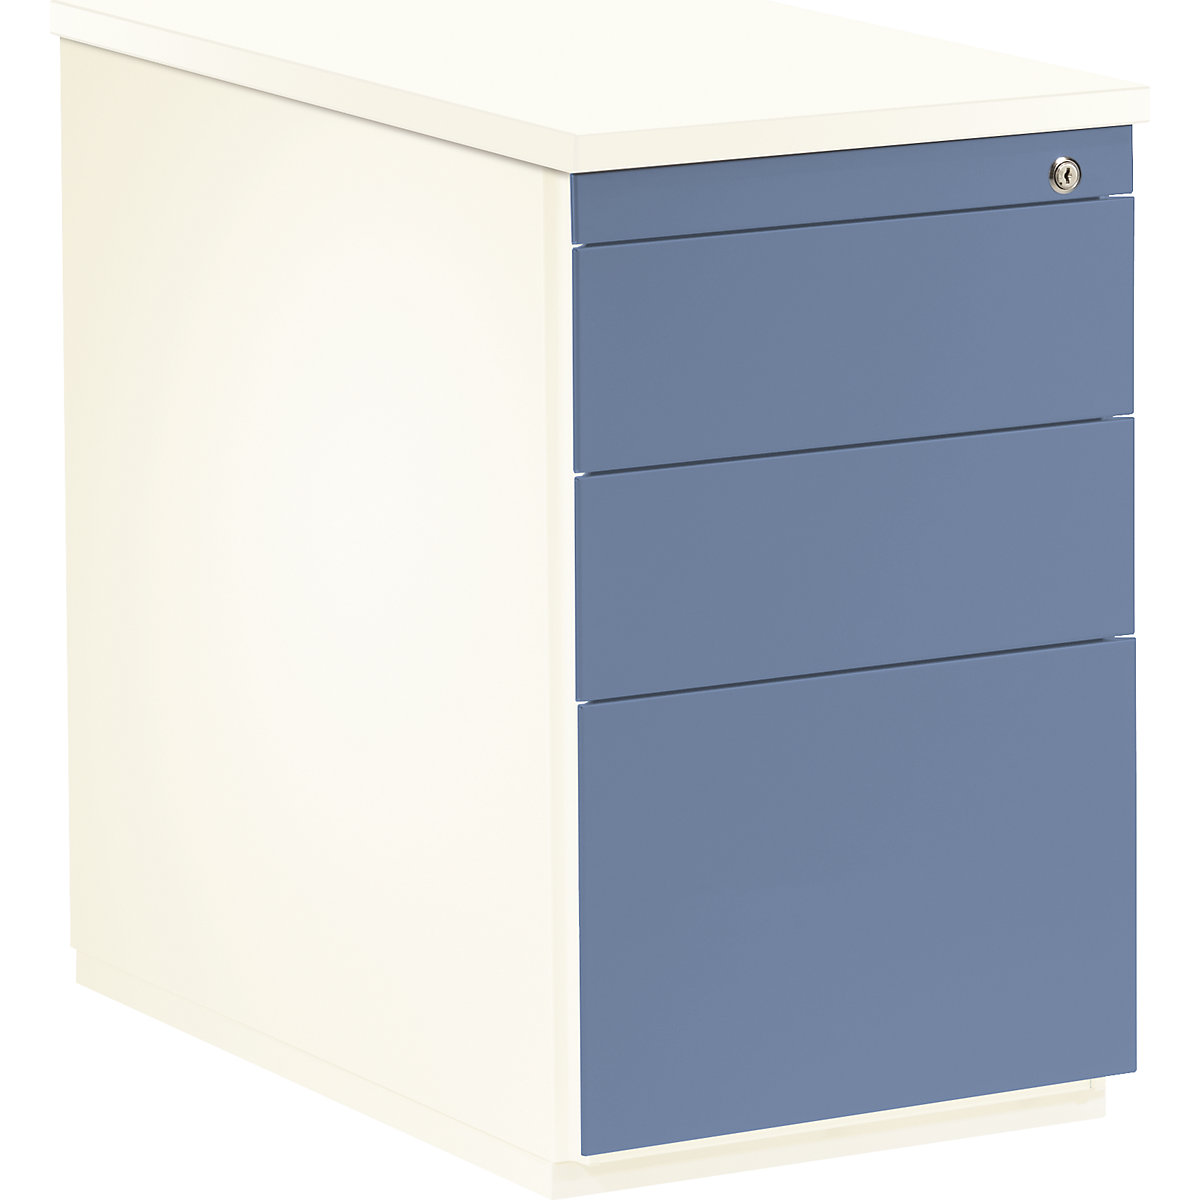 Zásuvkový kontejner – mauser, v x h 720 x 800 mm, 2 zásuvky na materiál, 1 kartotéka pro závěsné složky, čistá bílá / holubí modrá / čistá bílá-11